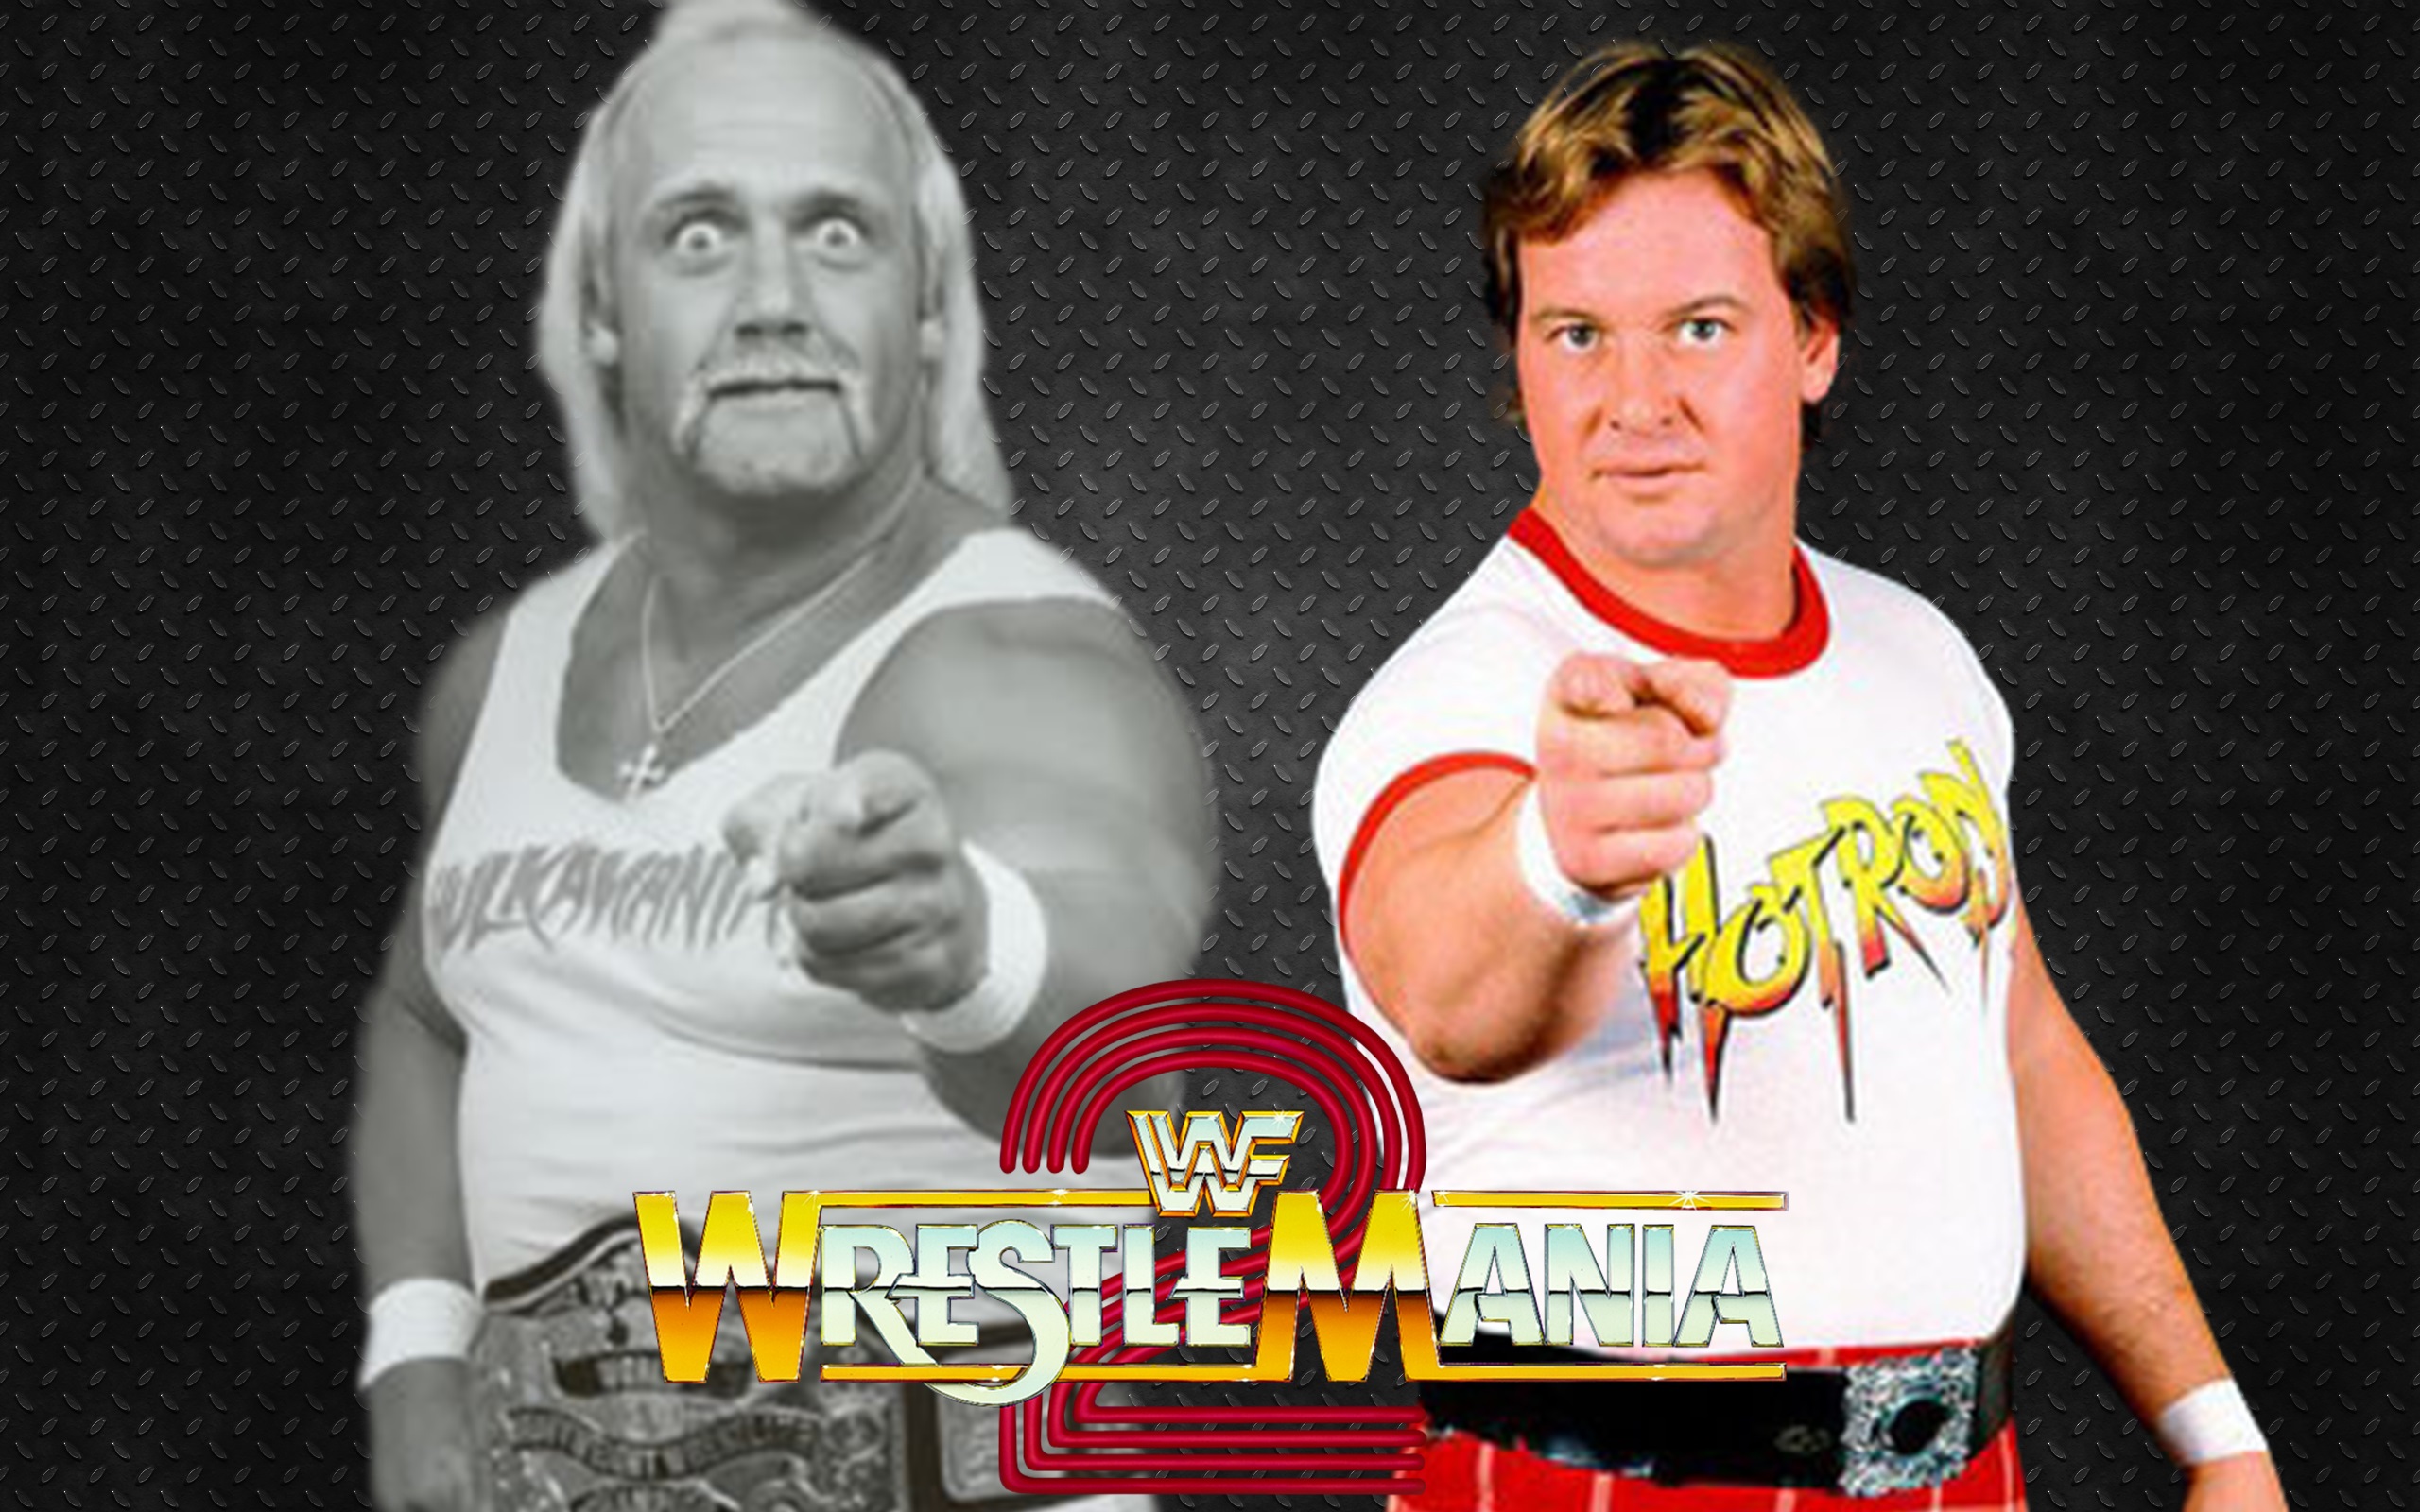 WWF Wrestlemania V [1989 TV Special]